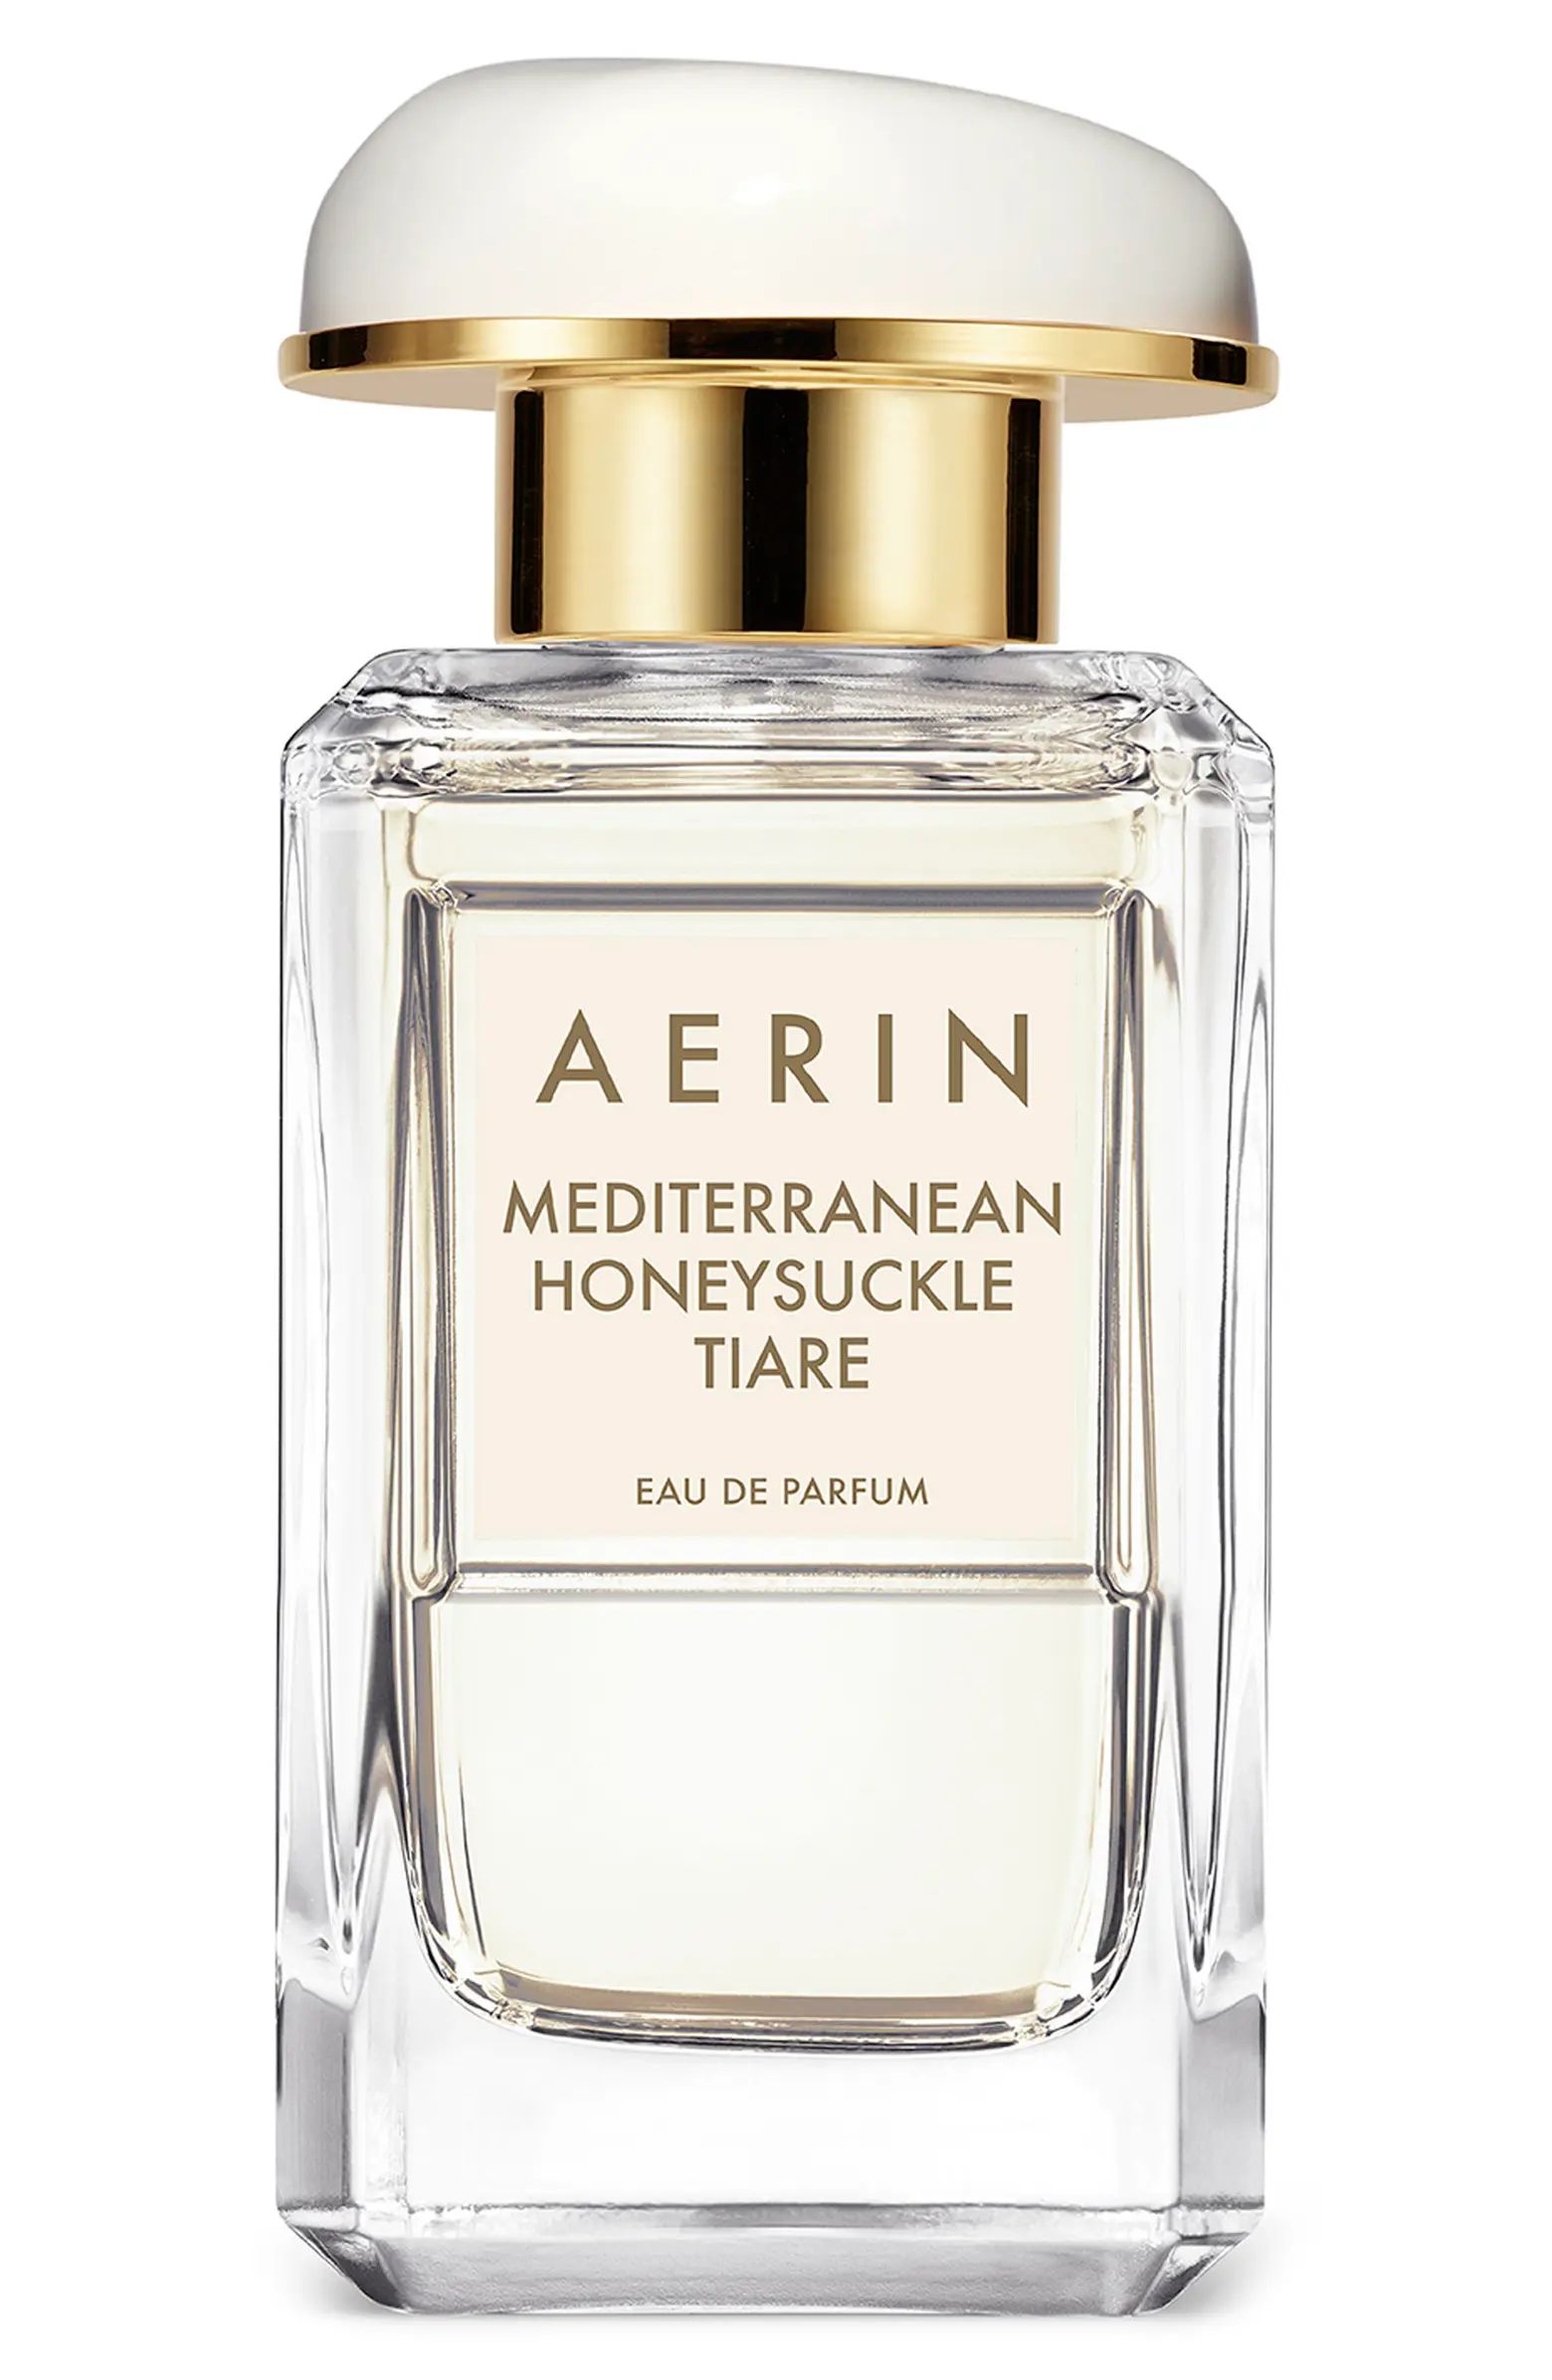 AERIN Mediterranean Honeysuckle Tiare Eau de Parfum Spray | Nordstrom